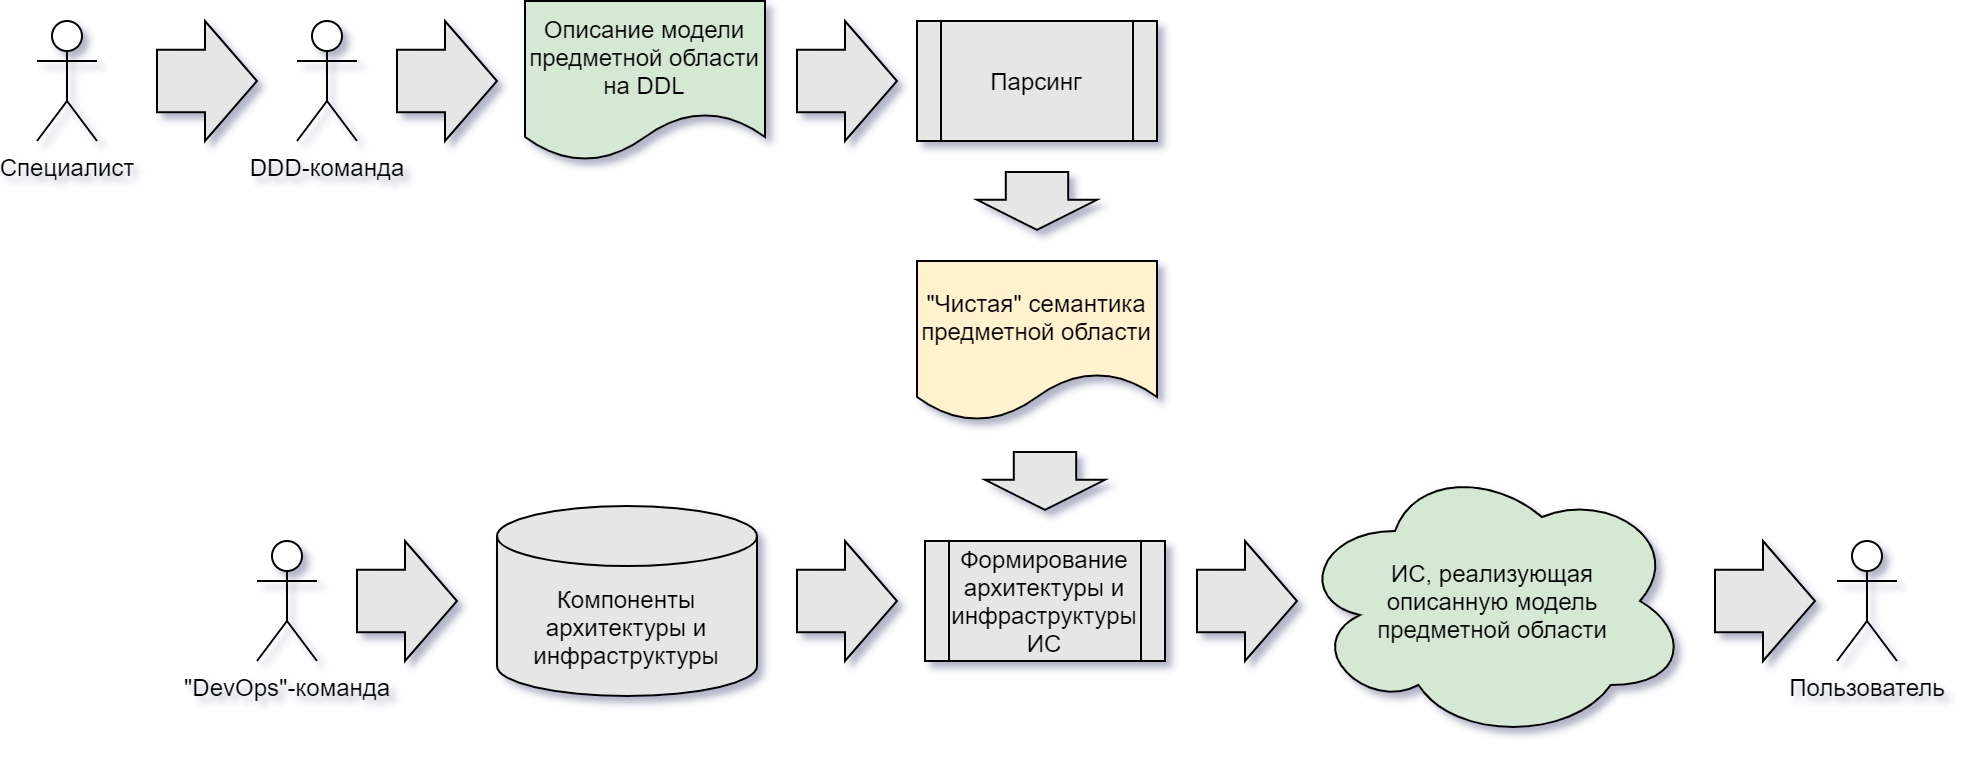 Рисунок 1. Схема формирования информационной системы из описания предметной области с использованием DDL